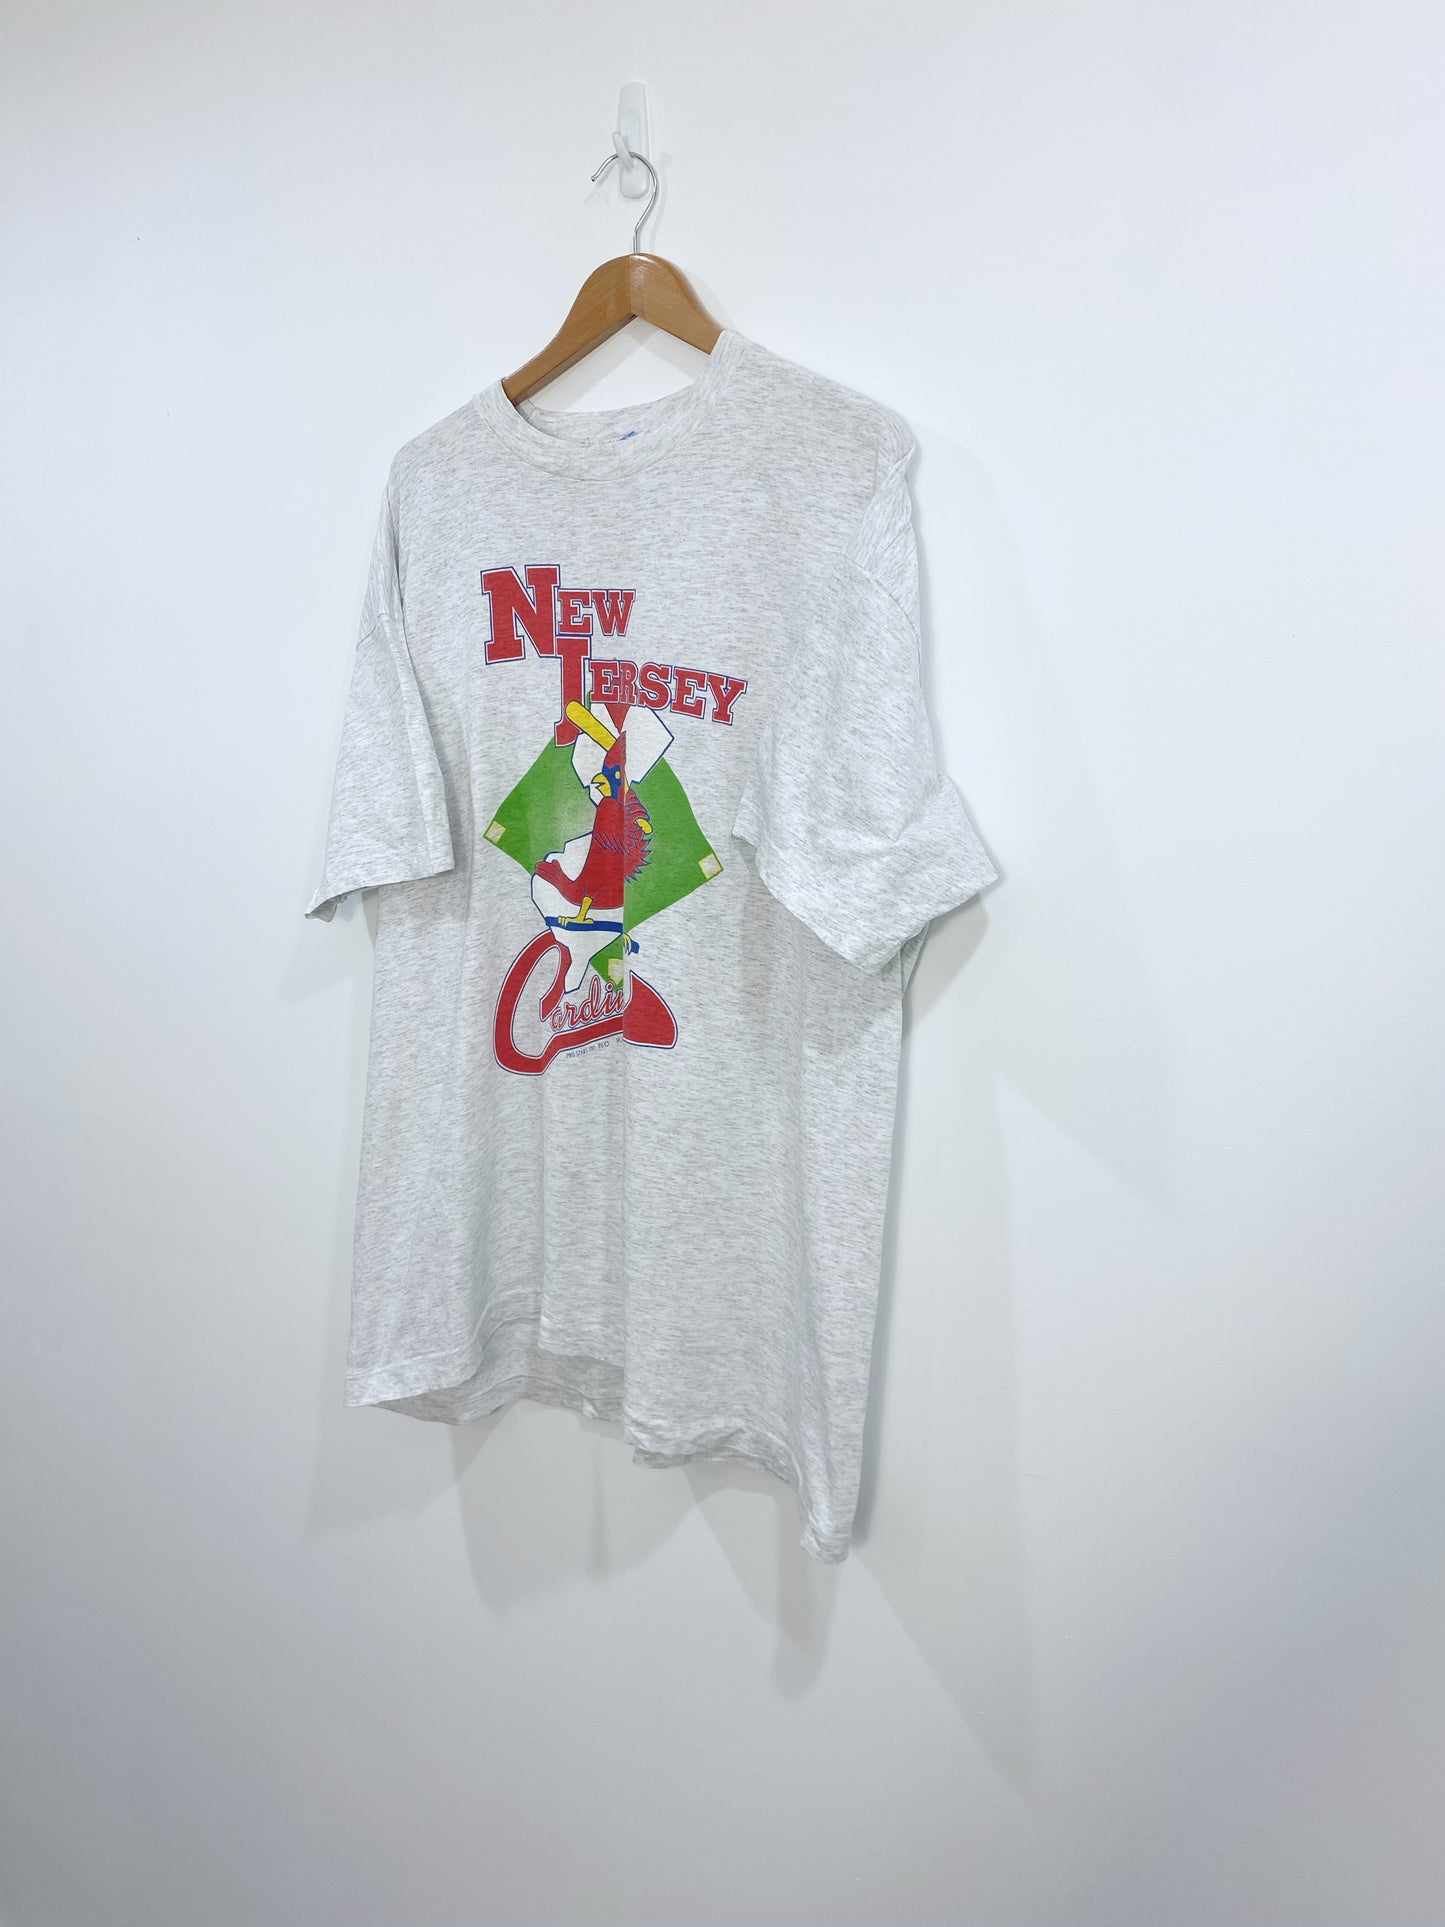 Vintage 1994 New Jersey Cardinals T-shirt XL